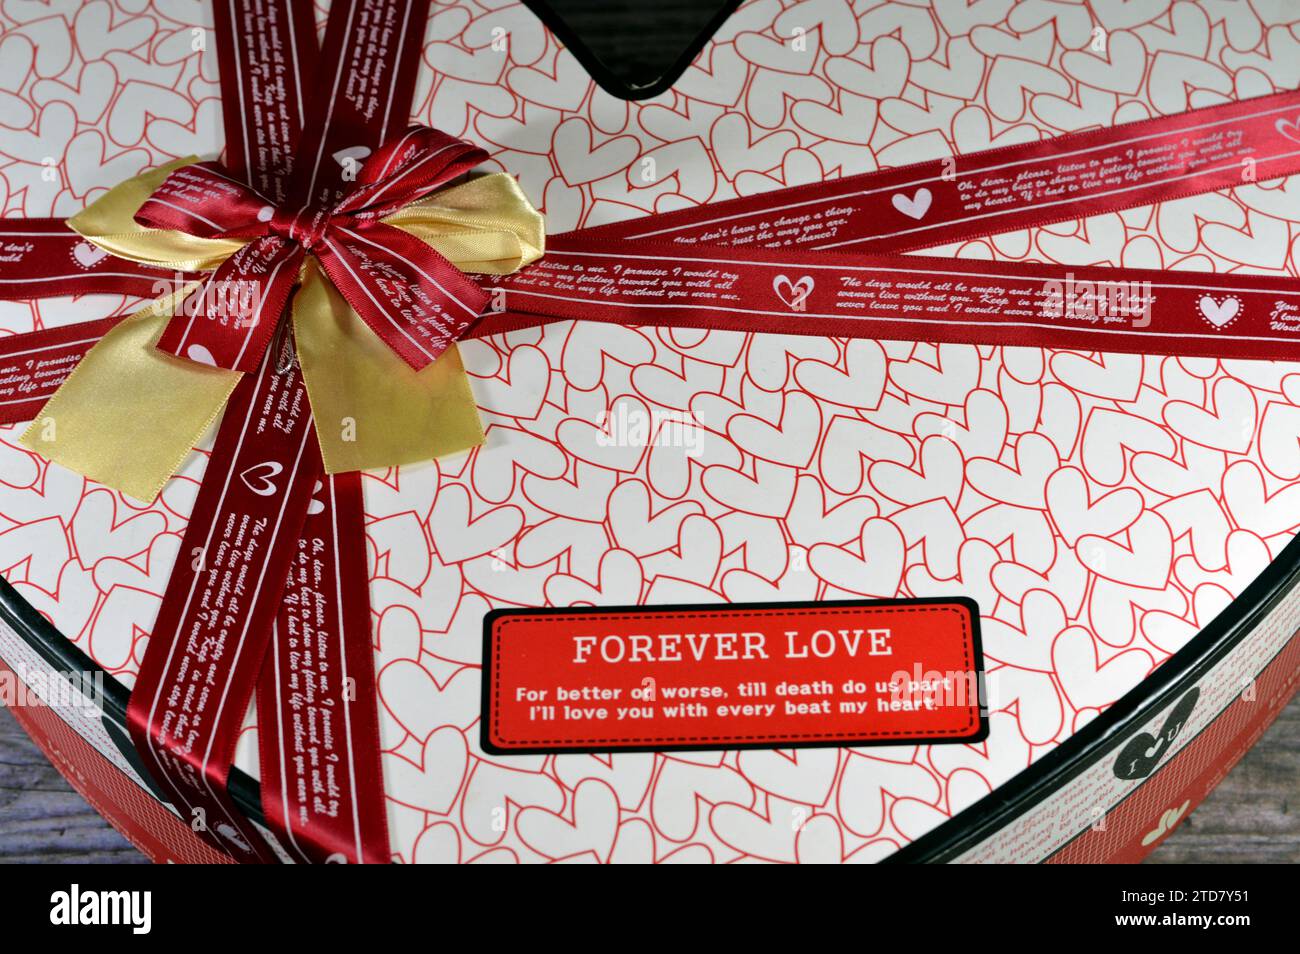 Herzförmige rot-weiße Box für Geschenke und Geschenke Verpackung, mit roten Bändern und romantischen Worten, Hochzeit, Jubiläum, Geburtstagsgeschenke Konzept für Stockfoto